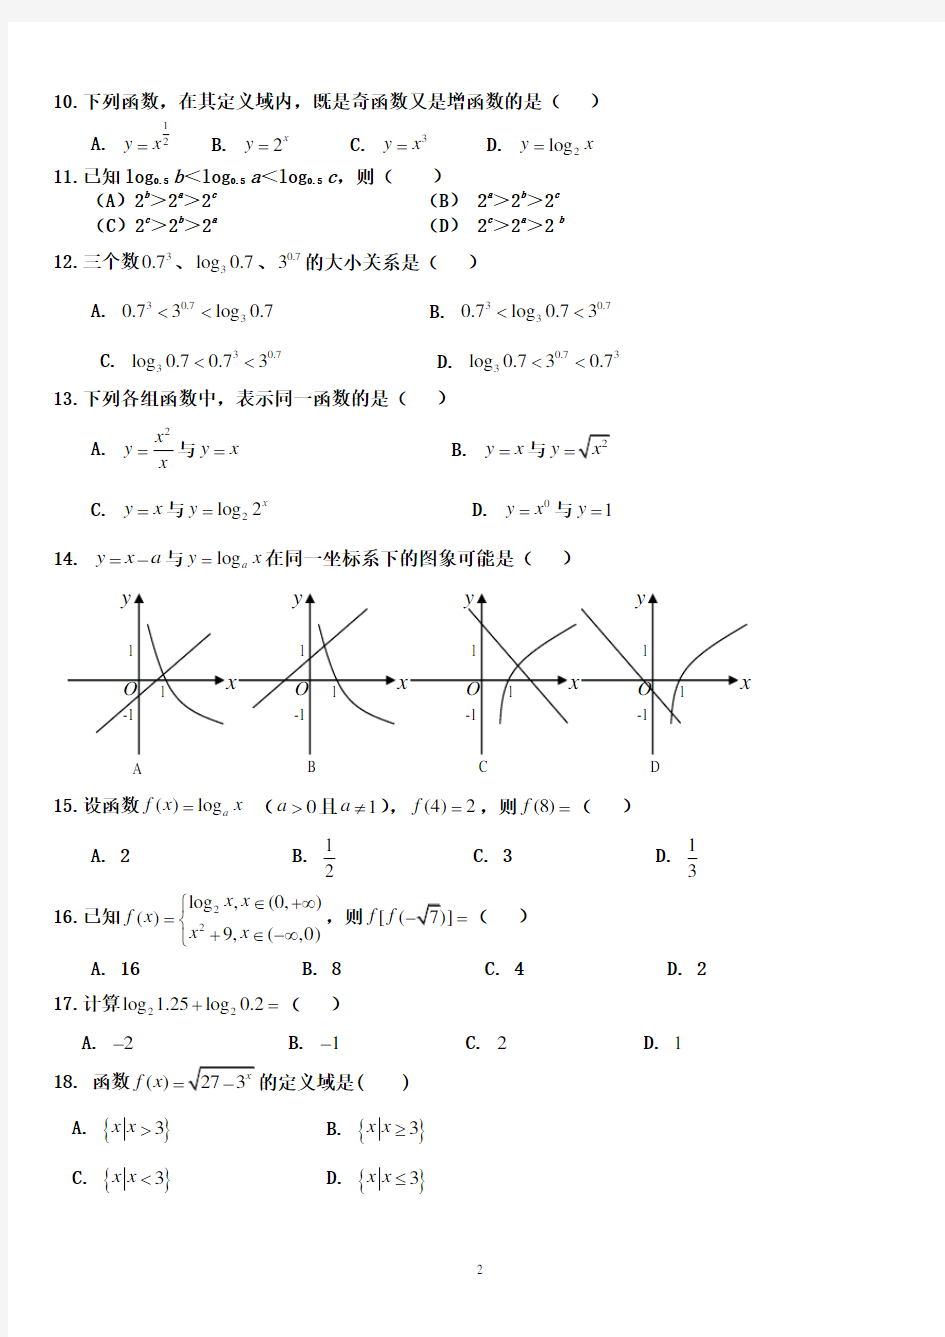 (完整版)中职数学第一册指数函数、对数函数测试题